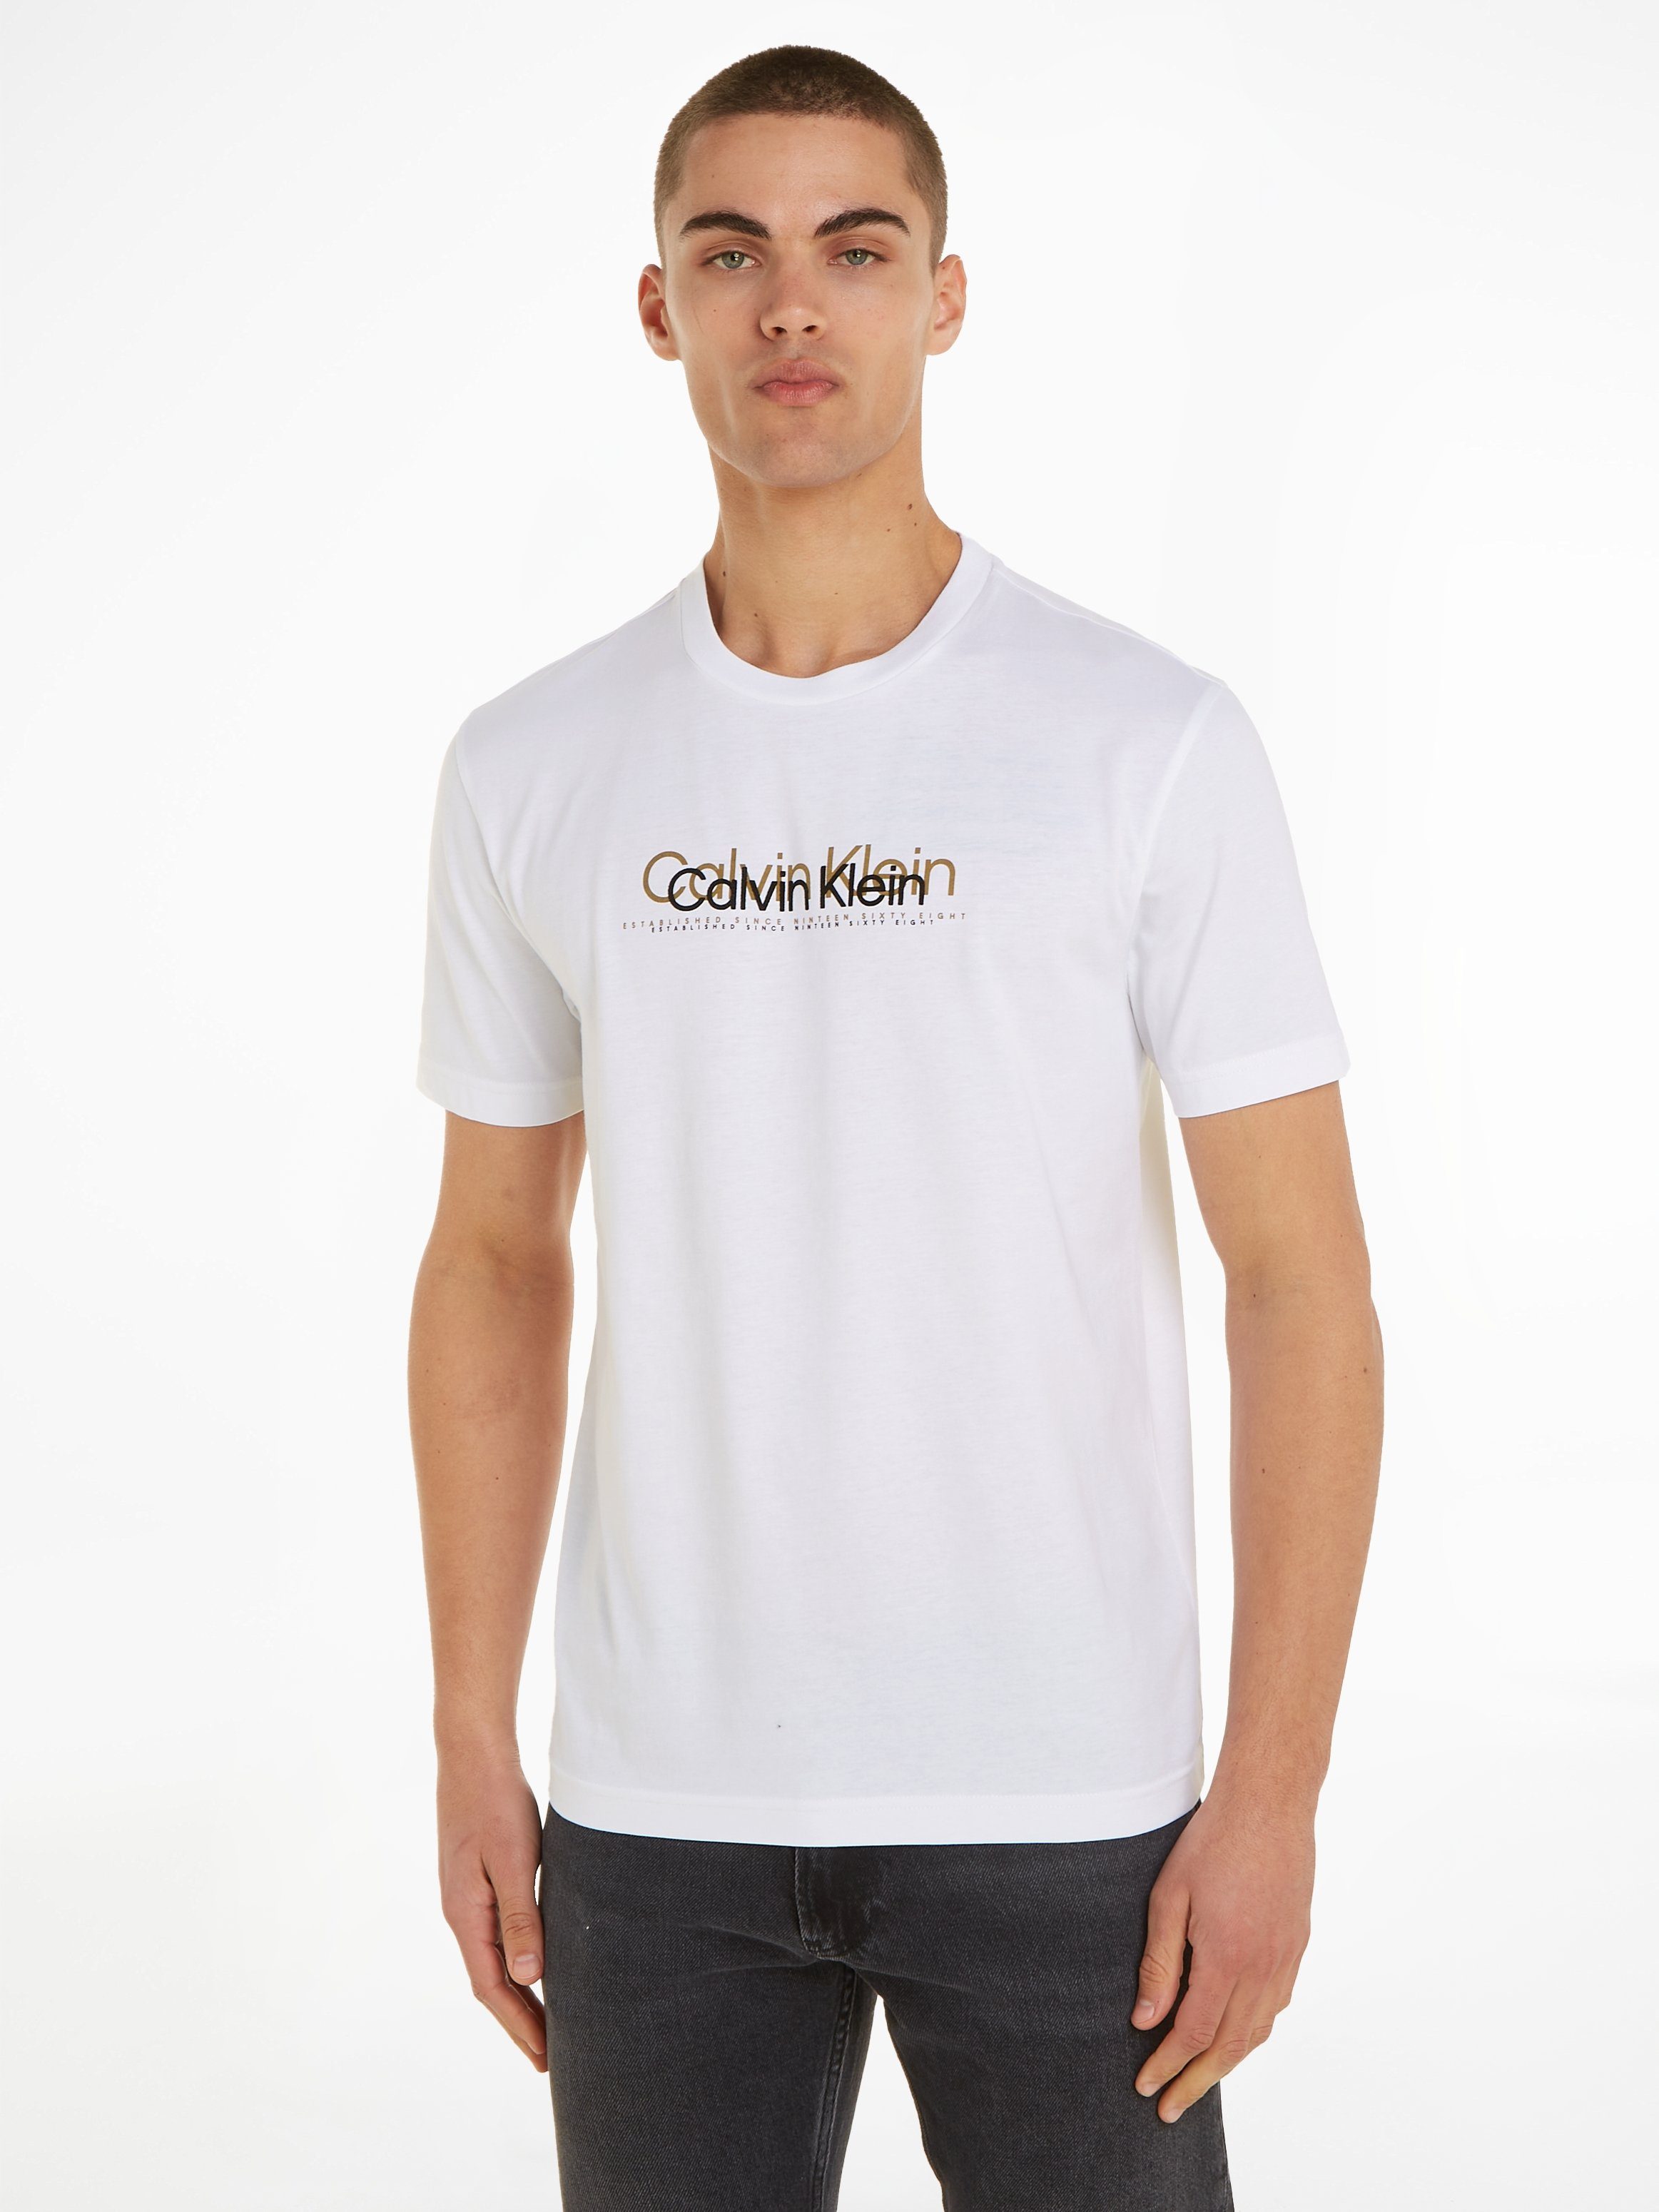 Calvin Klein T-Shirts für Herren kaufen » CK T-Shirts | OTTO